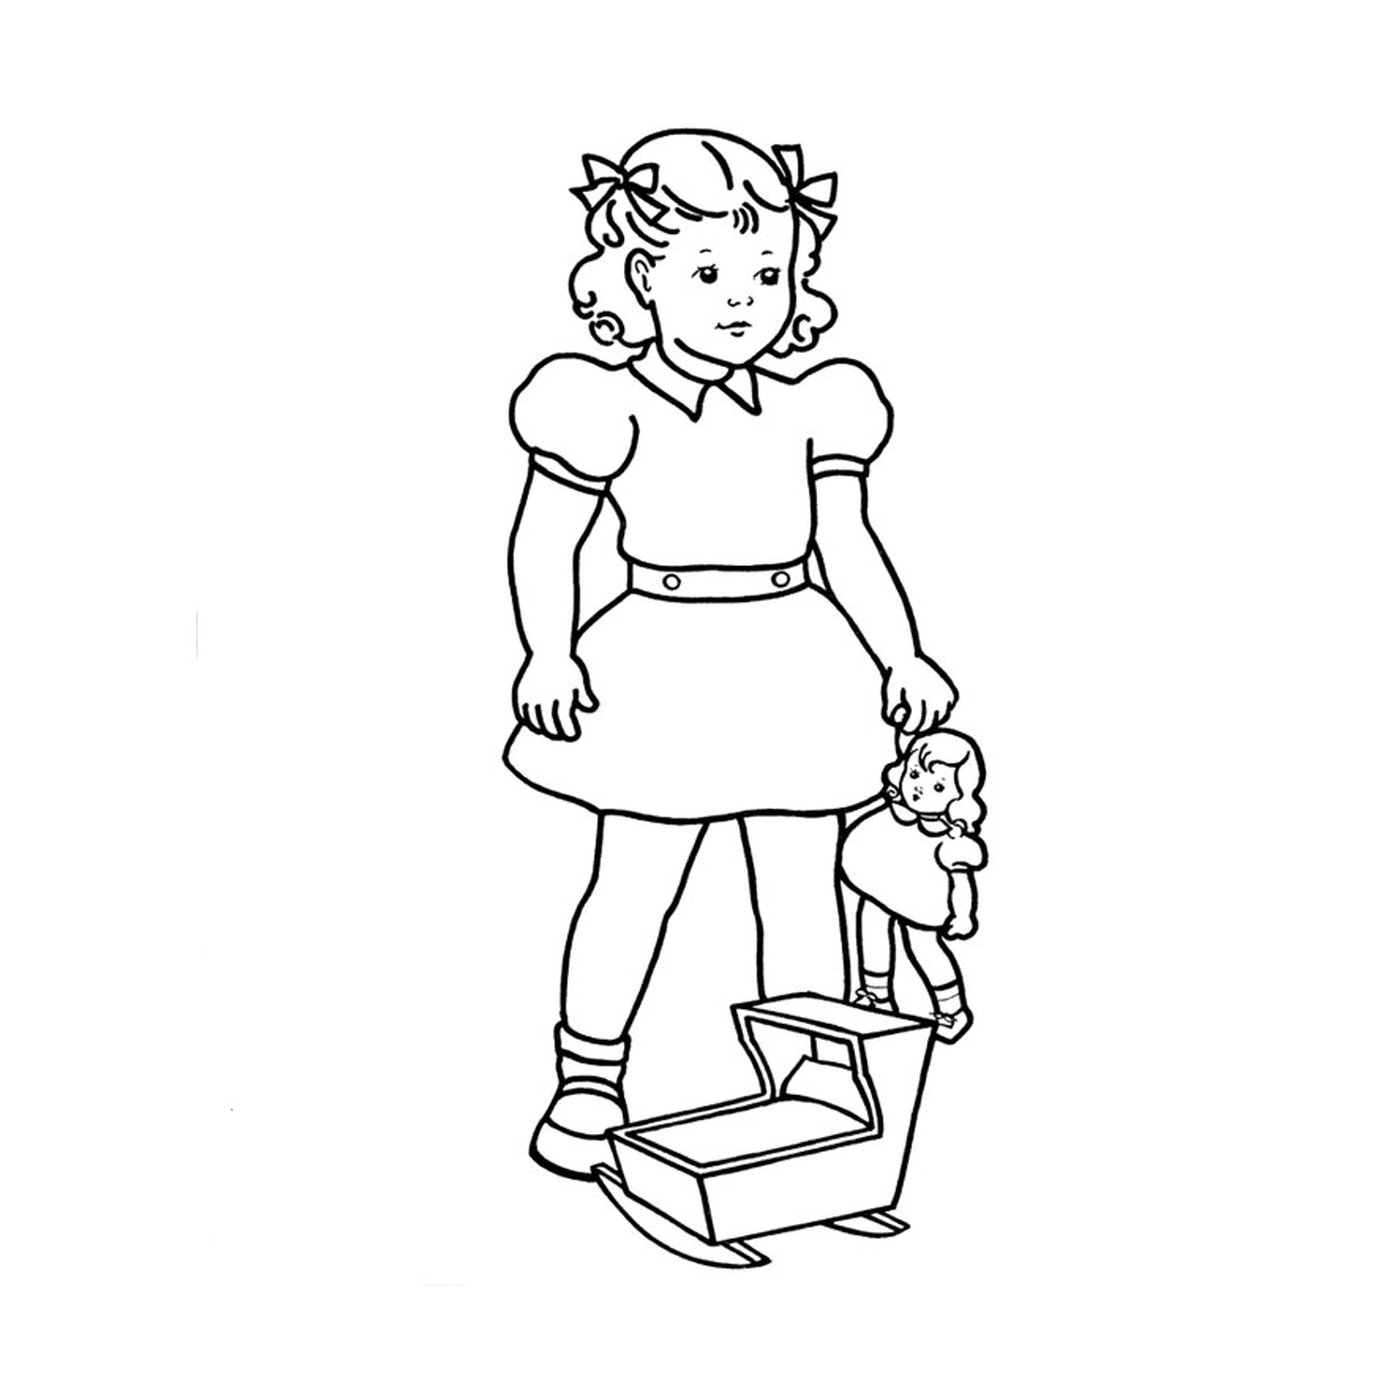  Ein kleines Mädchen, das eine Puppe hält 